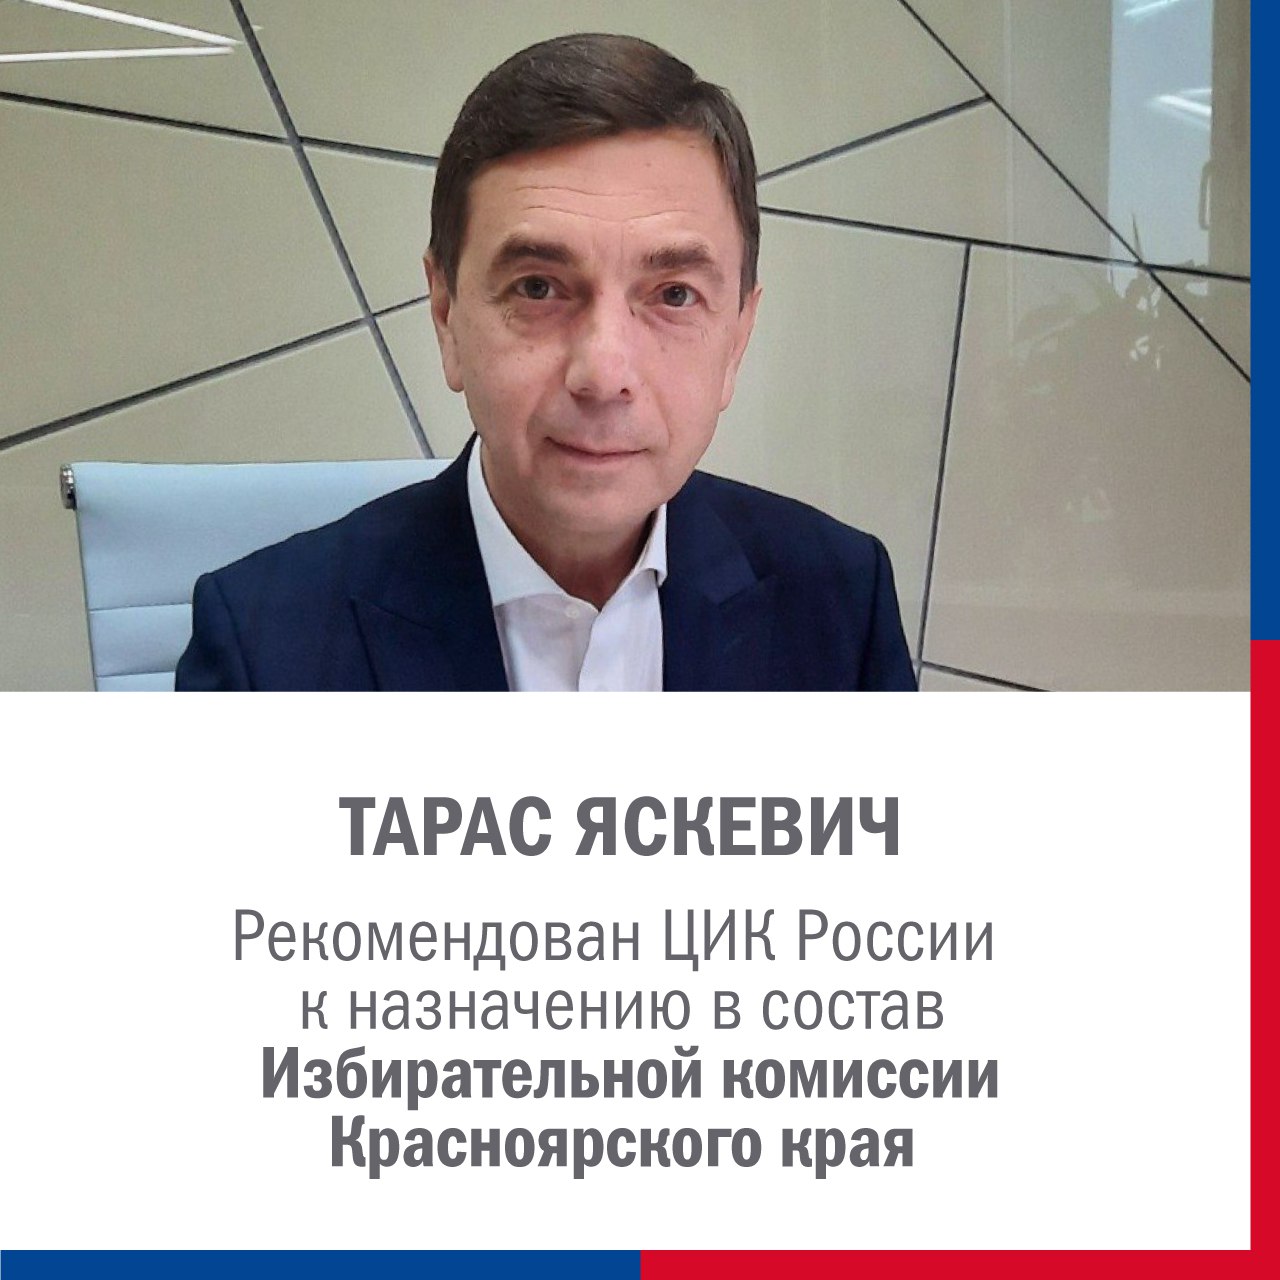 Новым главой избиркома Красноярского края предложен Тарас Яскевич